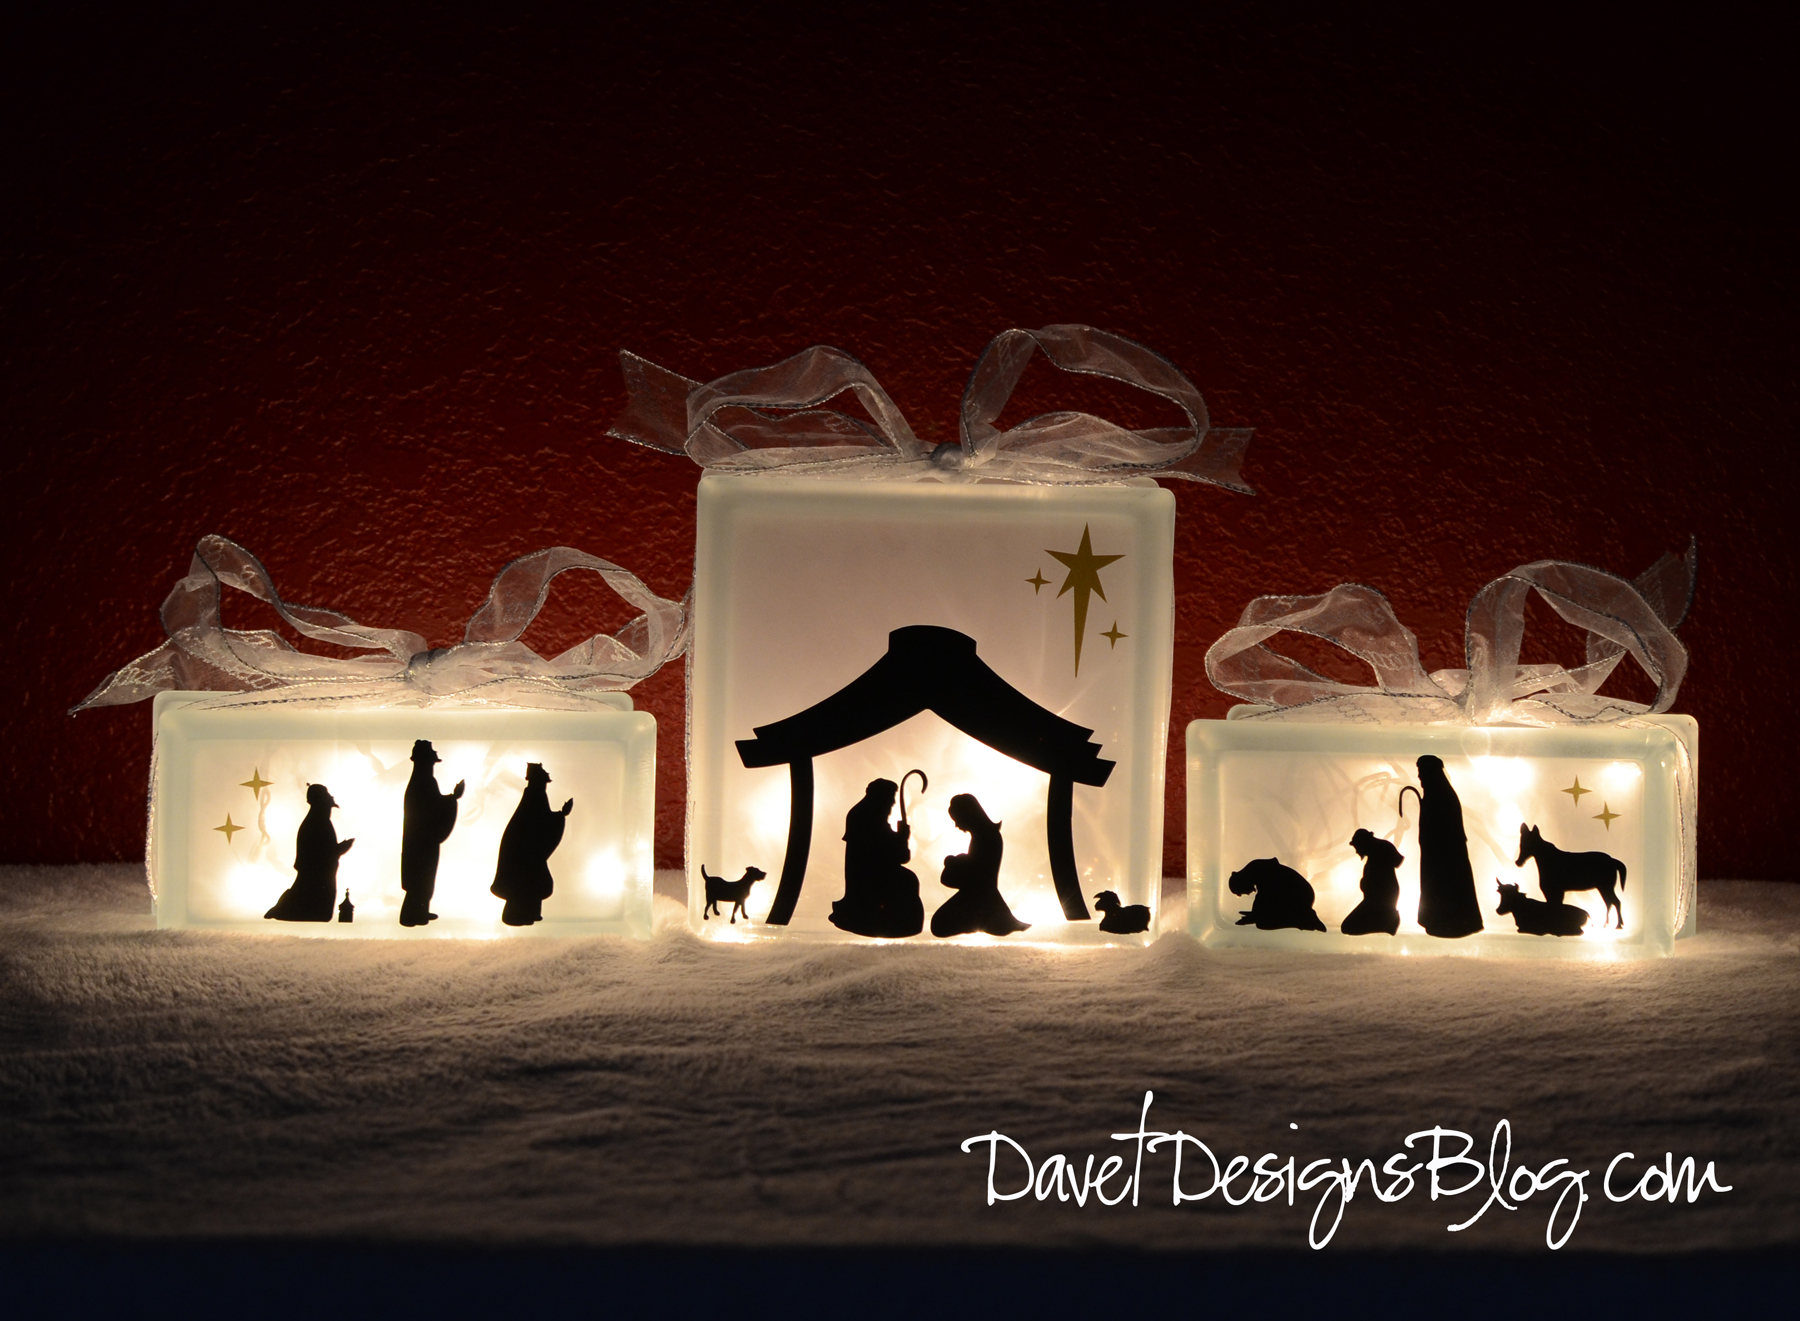 Davet Designs  Kraftyblok Nativity Scene With Vinyl Decals Tutorial